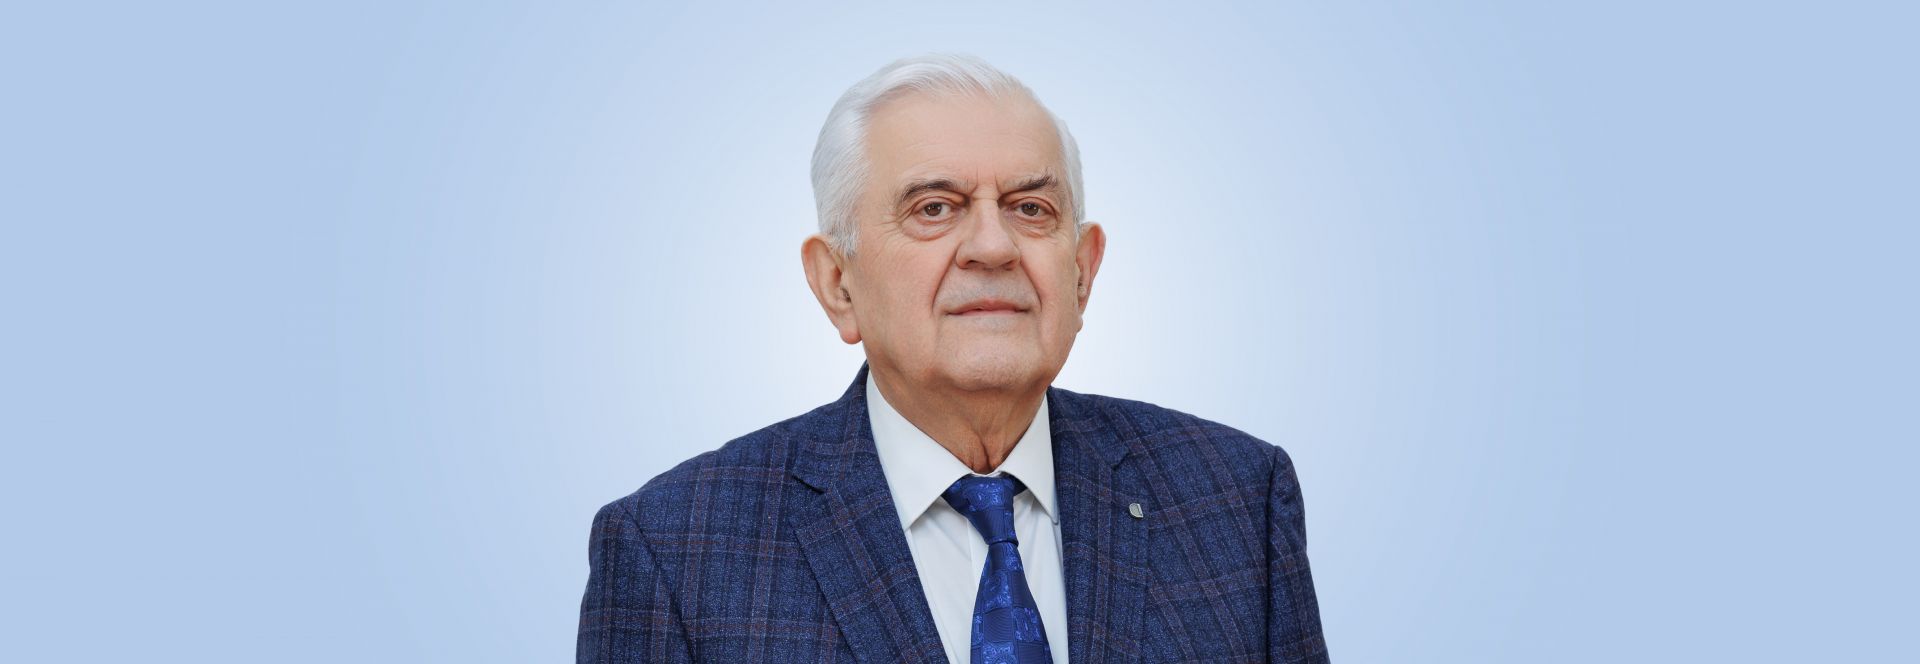 La mulți ani profesorului Adrian Tănase!